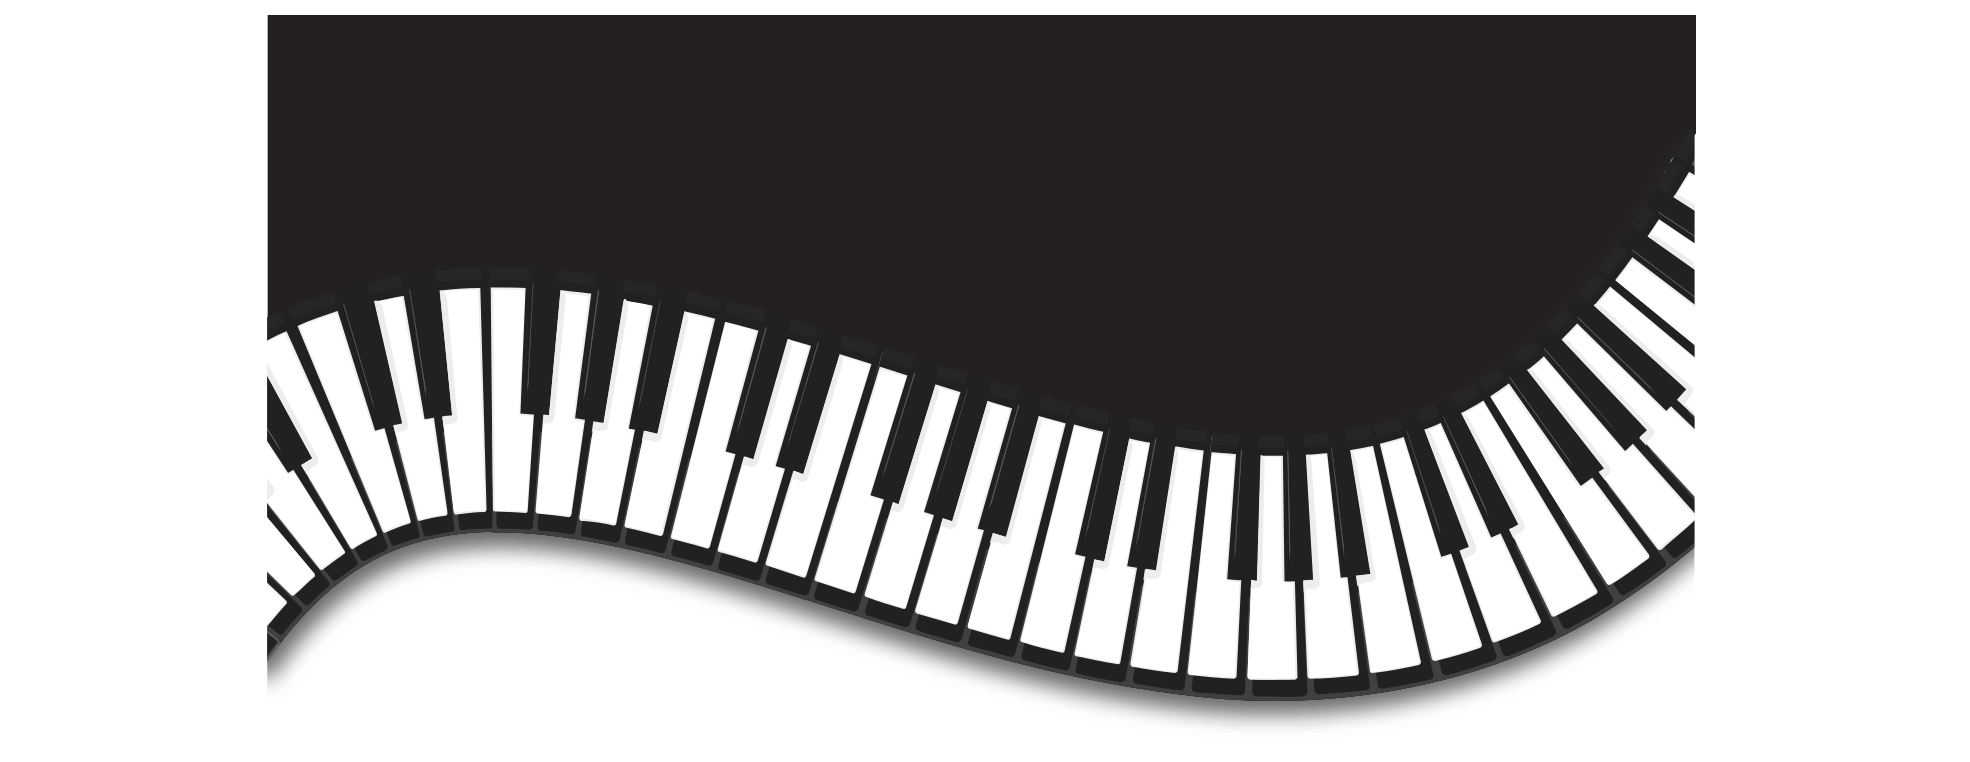 Пианино музыкальная клавиатура PNG картина